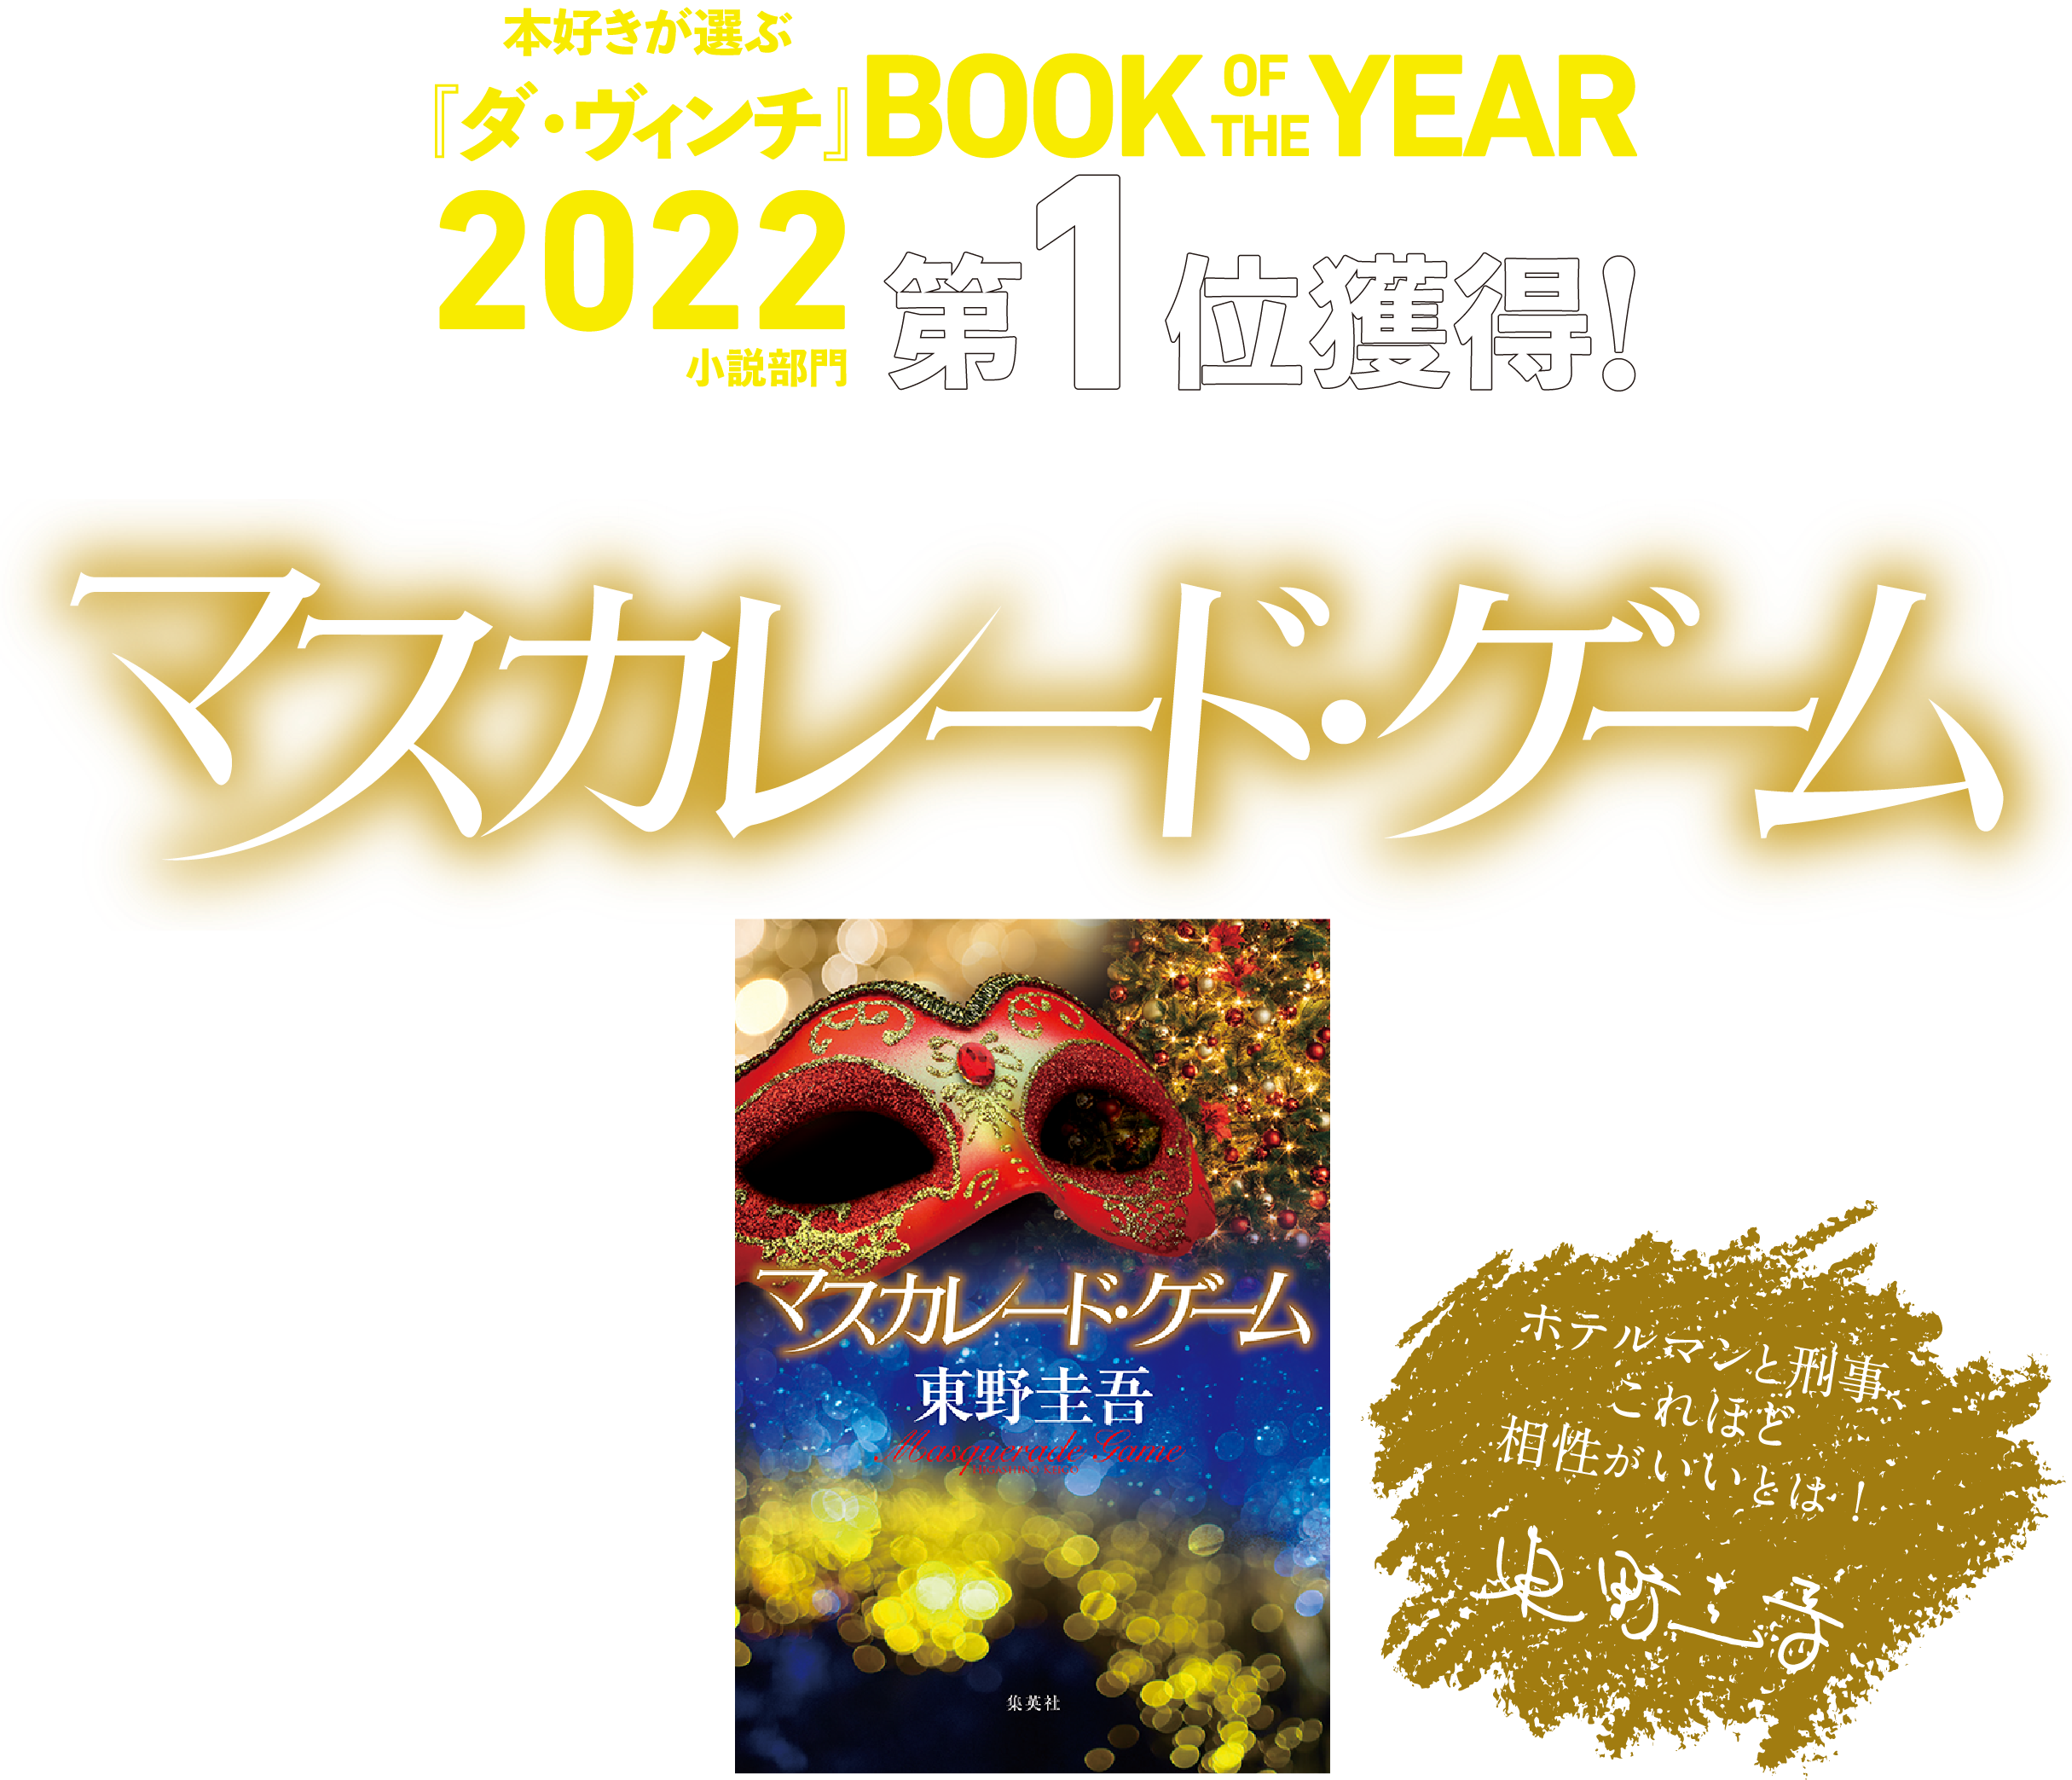 『ダ・ヴィンチ』BOOK OF THE YEAR2022小説部門第１位獲得！東野圭吾「マスカレード」シリーズ最新作『マスカレード・ゲーム』